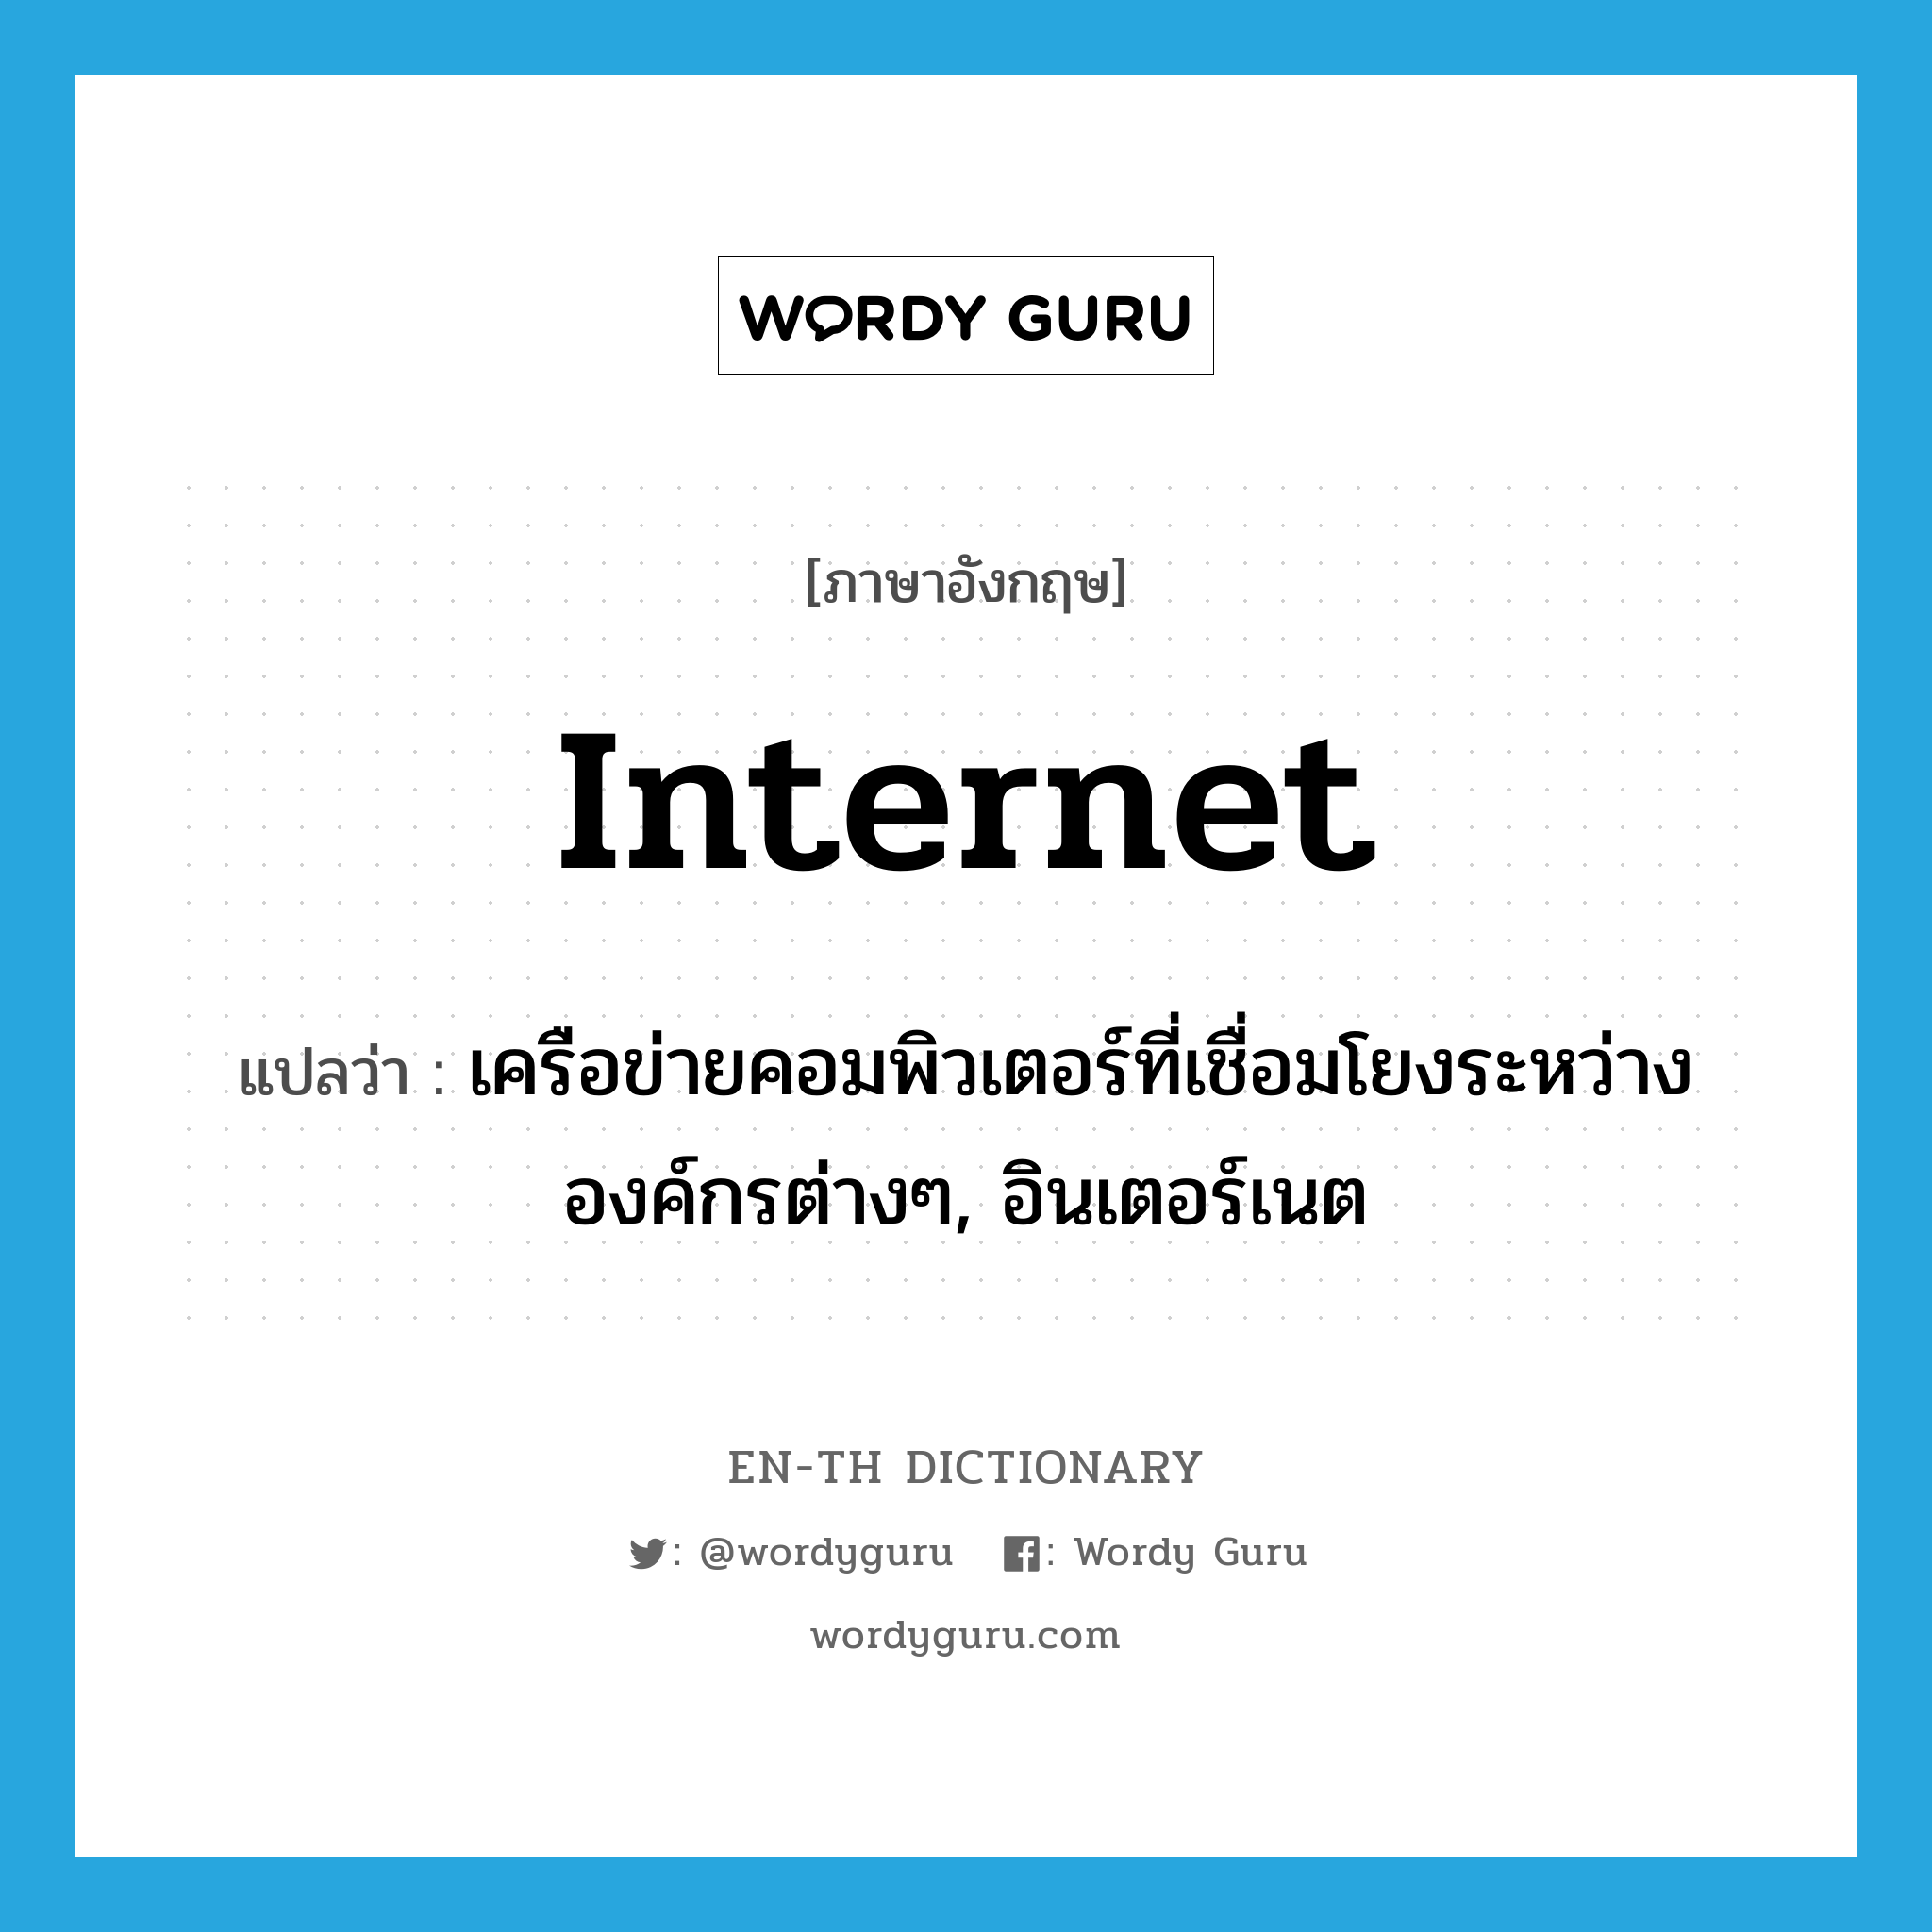 Internet แปลว่า?, คำศัพท์ภาษาอังกฤษ Internet แปลว่า เครือข่ายคอมพิวเตอร์ที่เชื่อมโยงระหว่างองค์กรต่างๆ, อินเตอร์เนต ประเภท N หมวด N